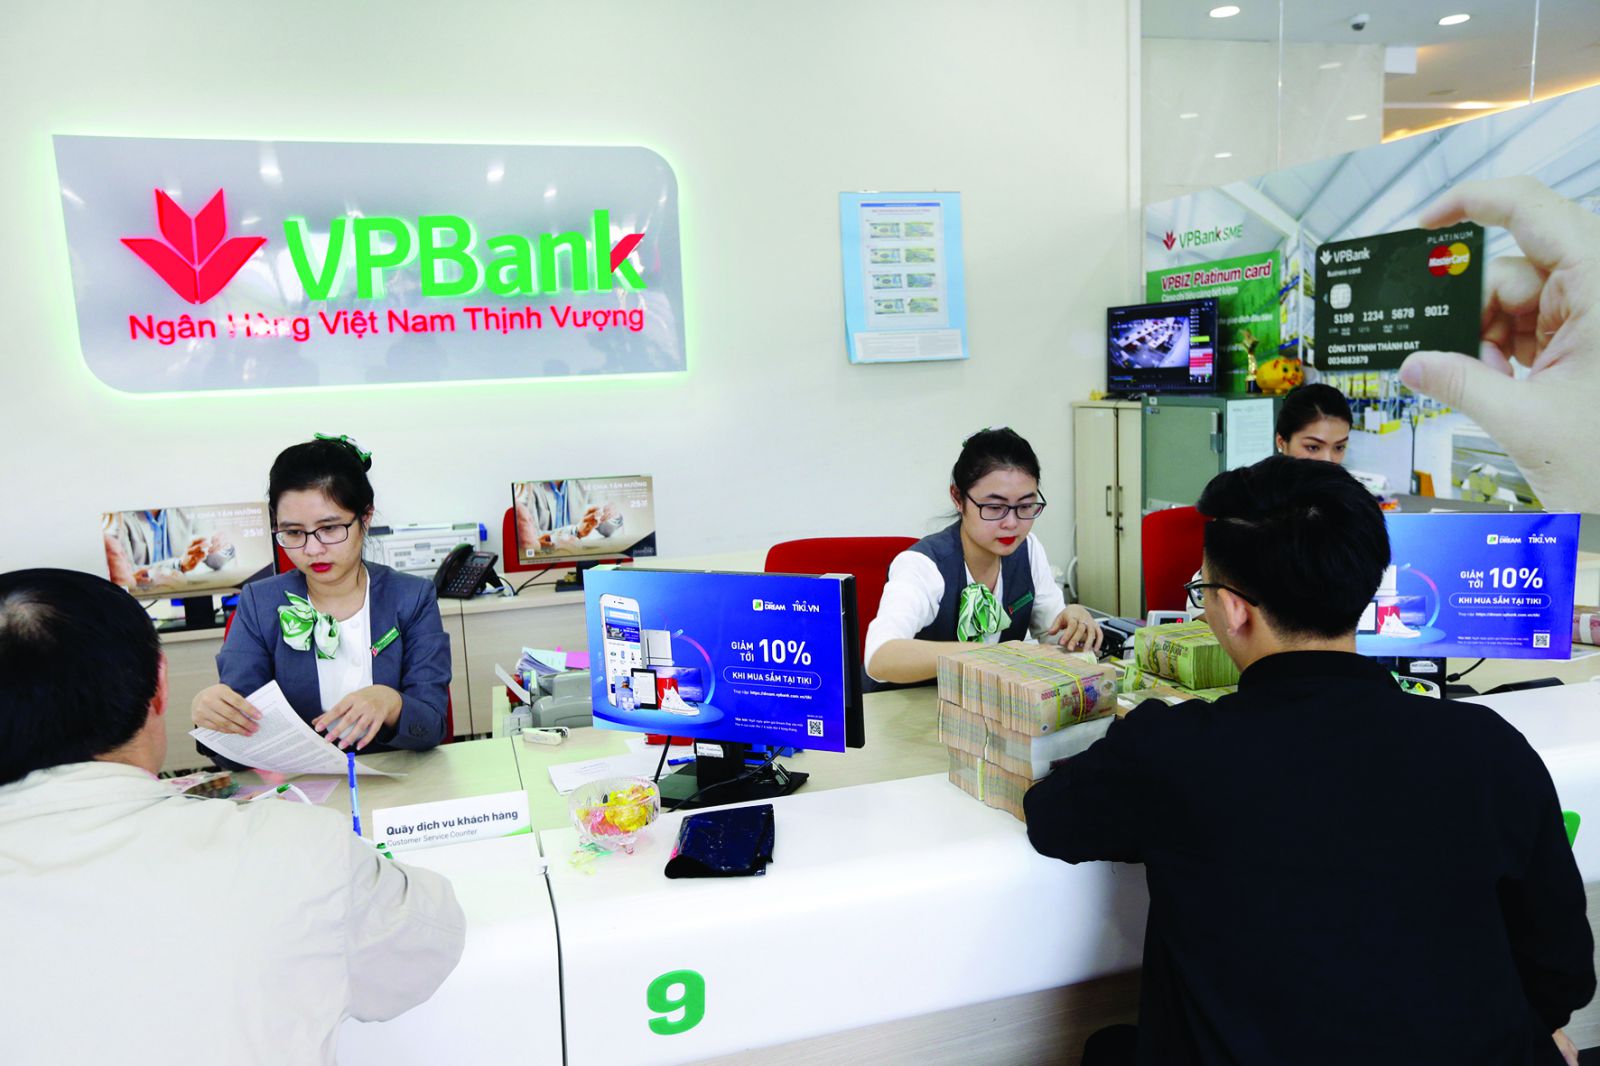  Cùng với sự phát triển của công nghệ, các ngân hàng như VPBank luôn phải đấu tranh với các thủ đoạn lừa đảo tinh vi, nhằm chiếm đoạt tiền của khách hàng, làm tổn hại đến uy tín nhà băng. 